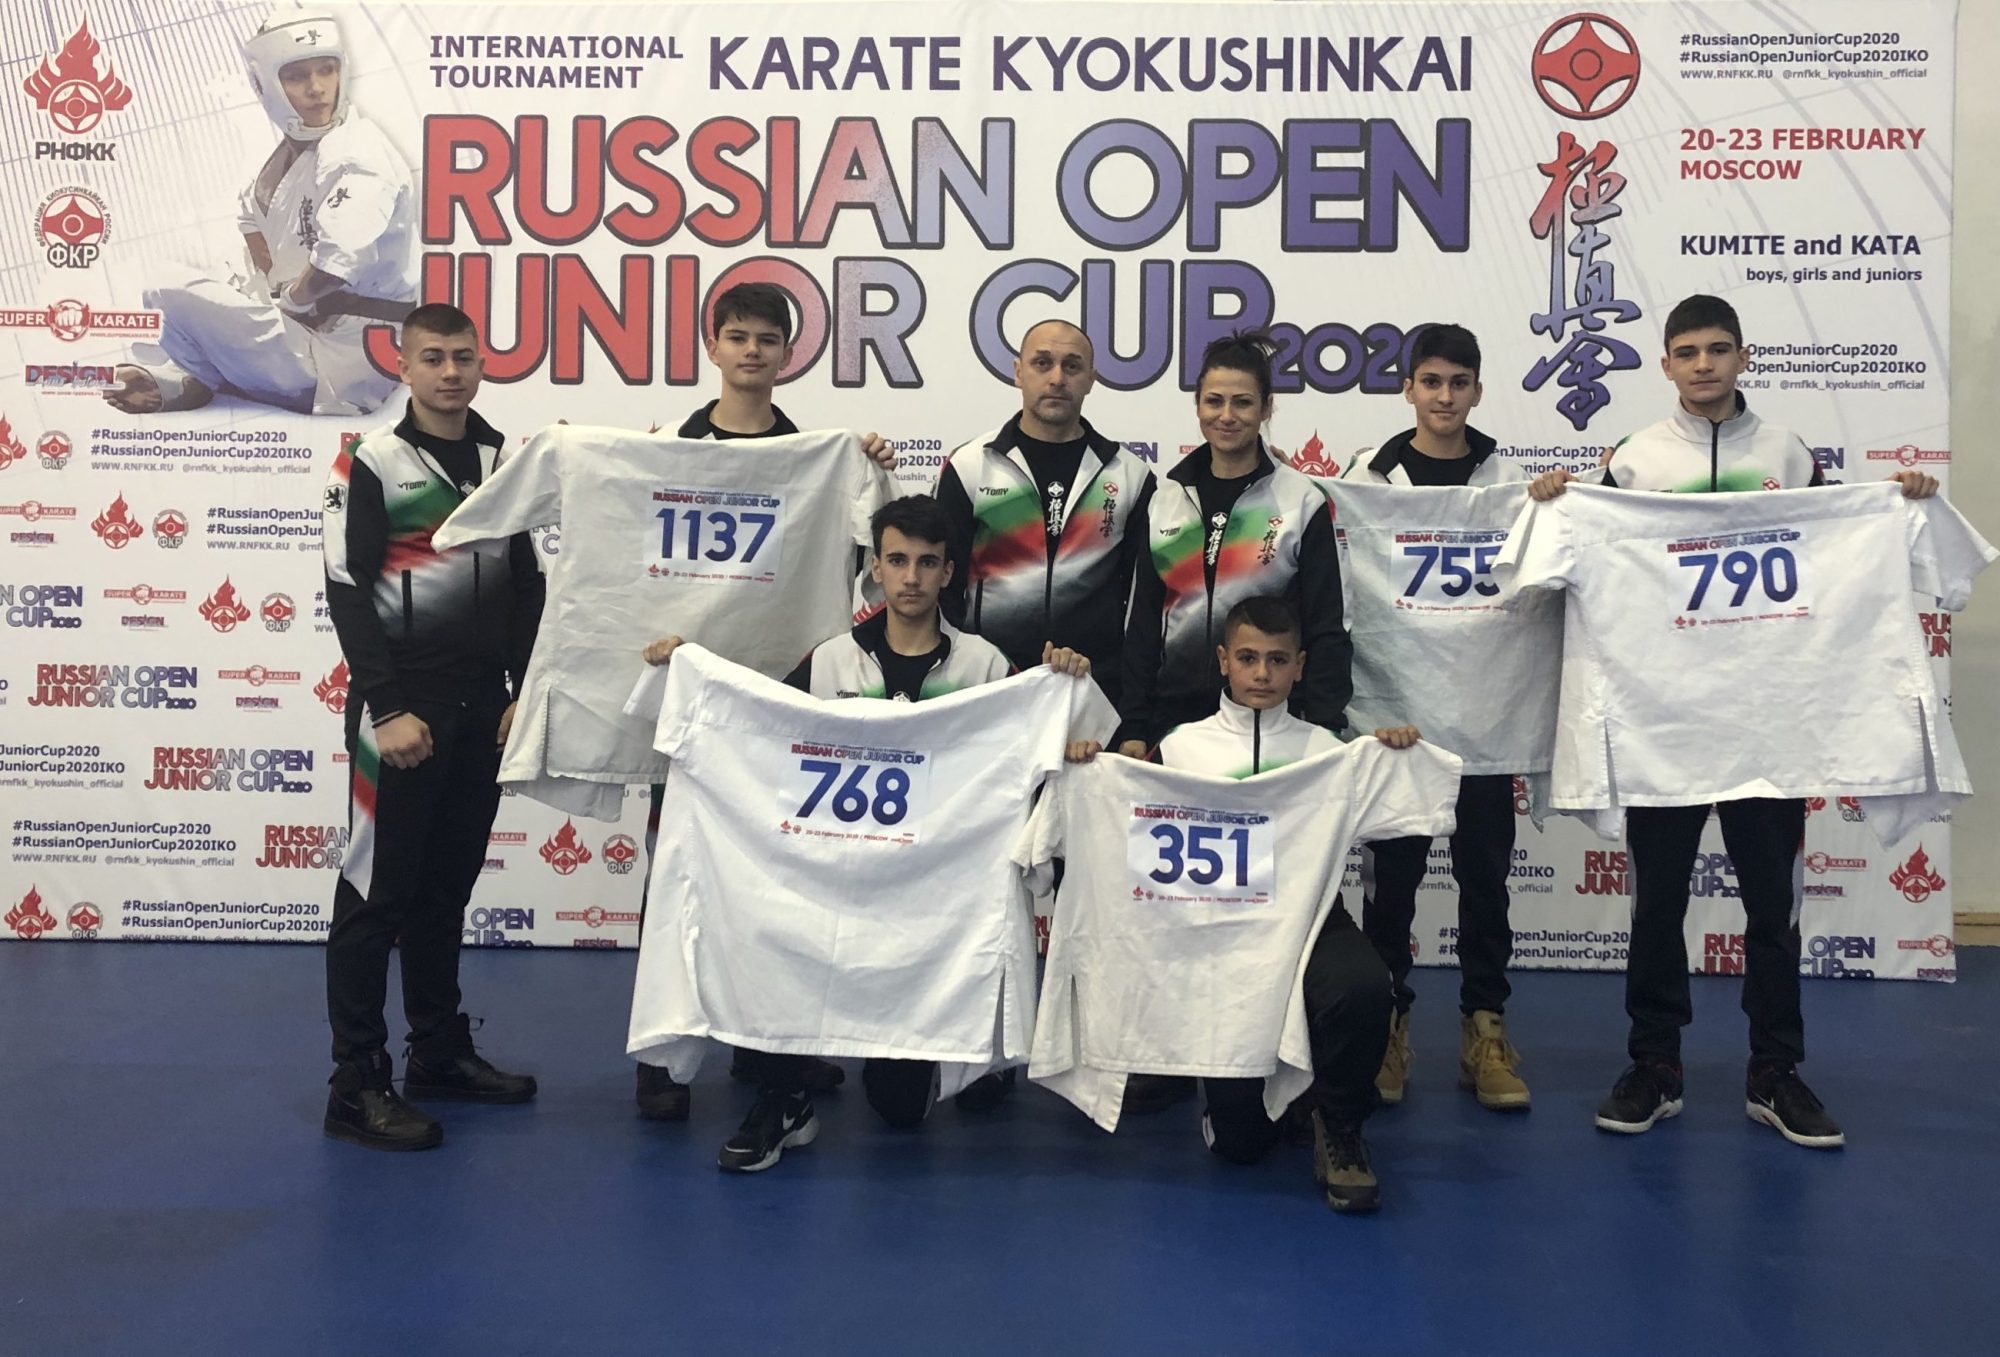 Russian Open Junior Cup 2020